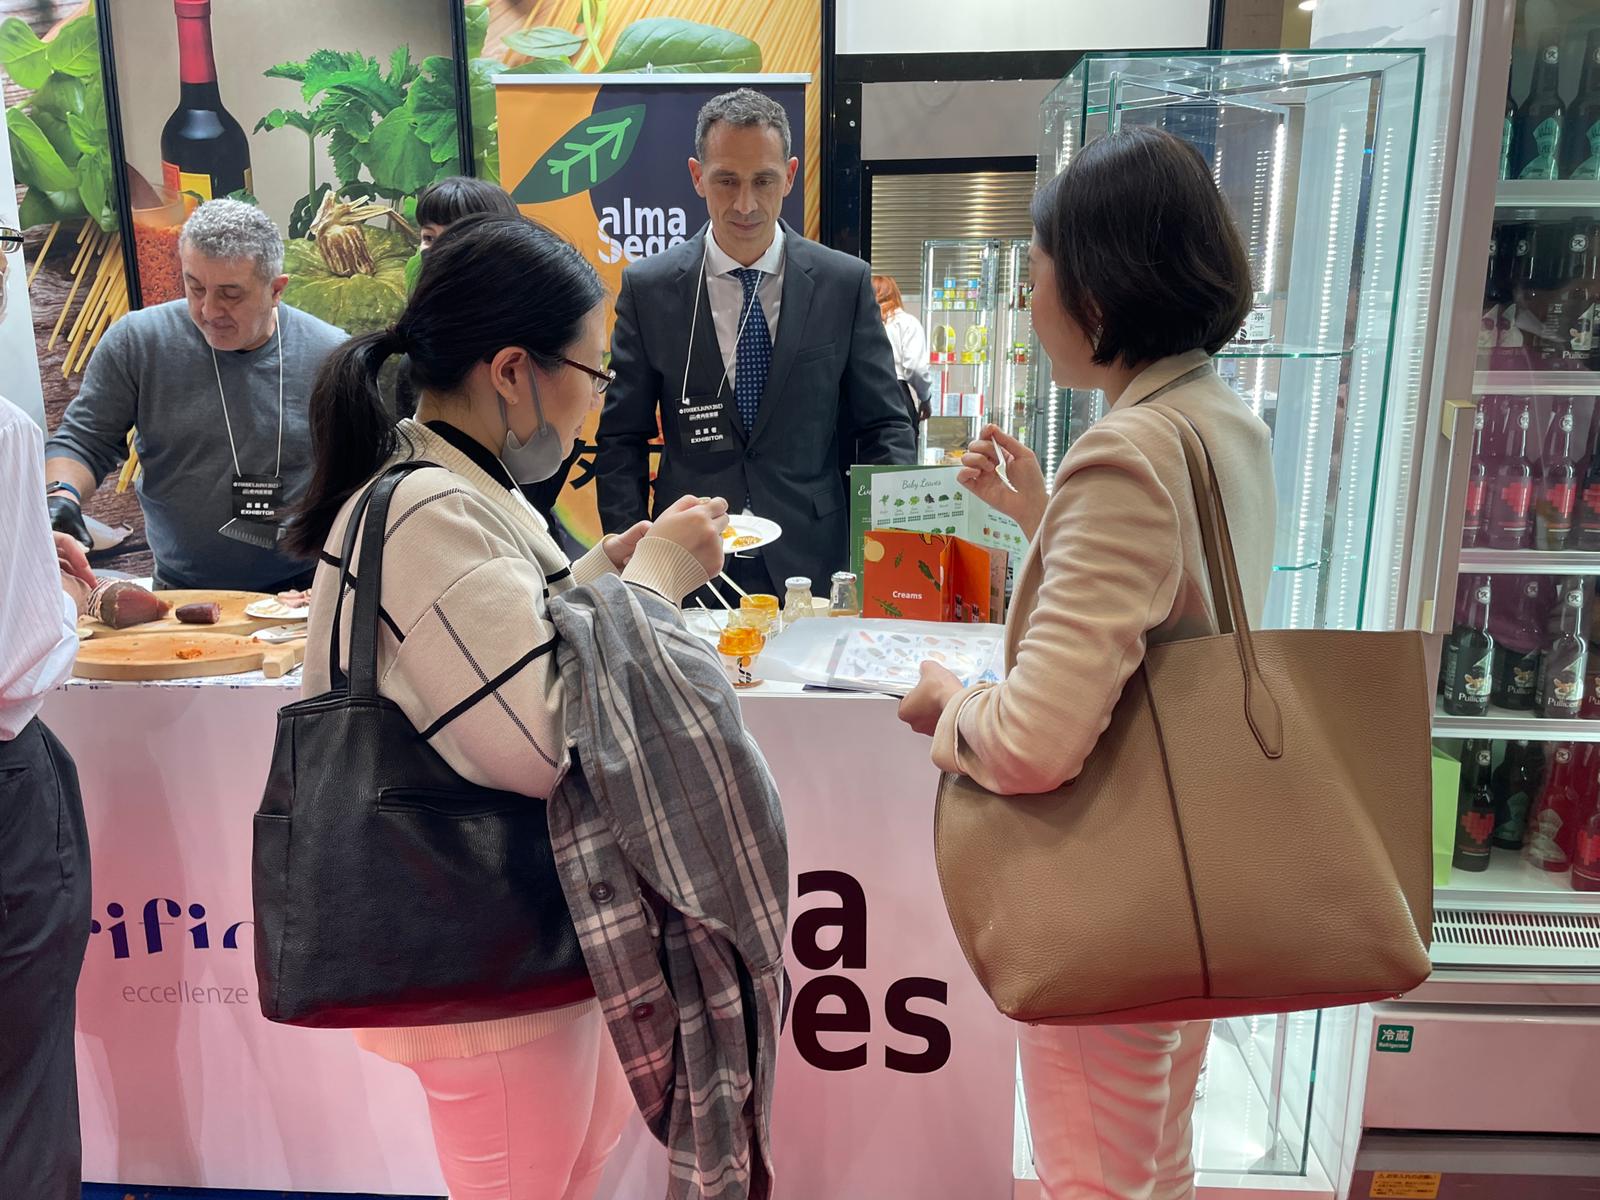 Giapponesi pazzi per la crema di zucca della piana del Sele: Alma Seges conquista i visitatori del Foodex 